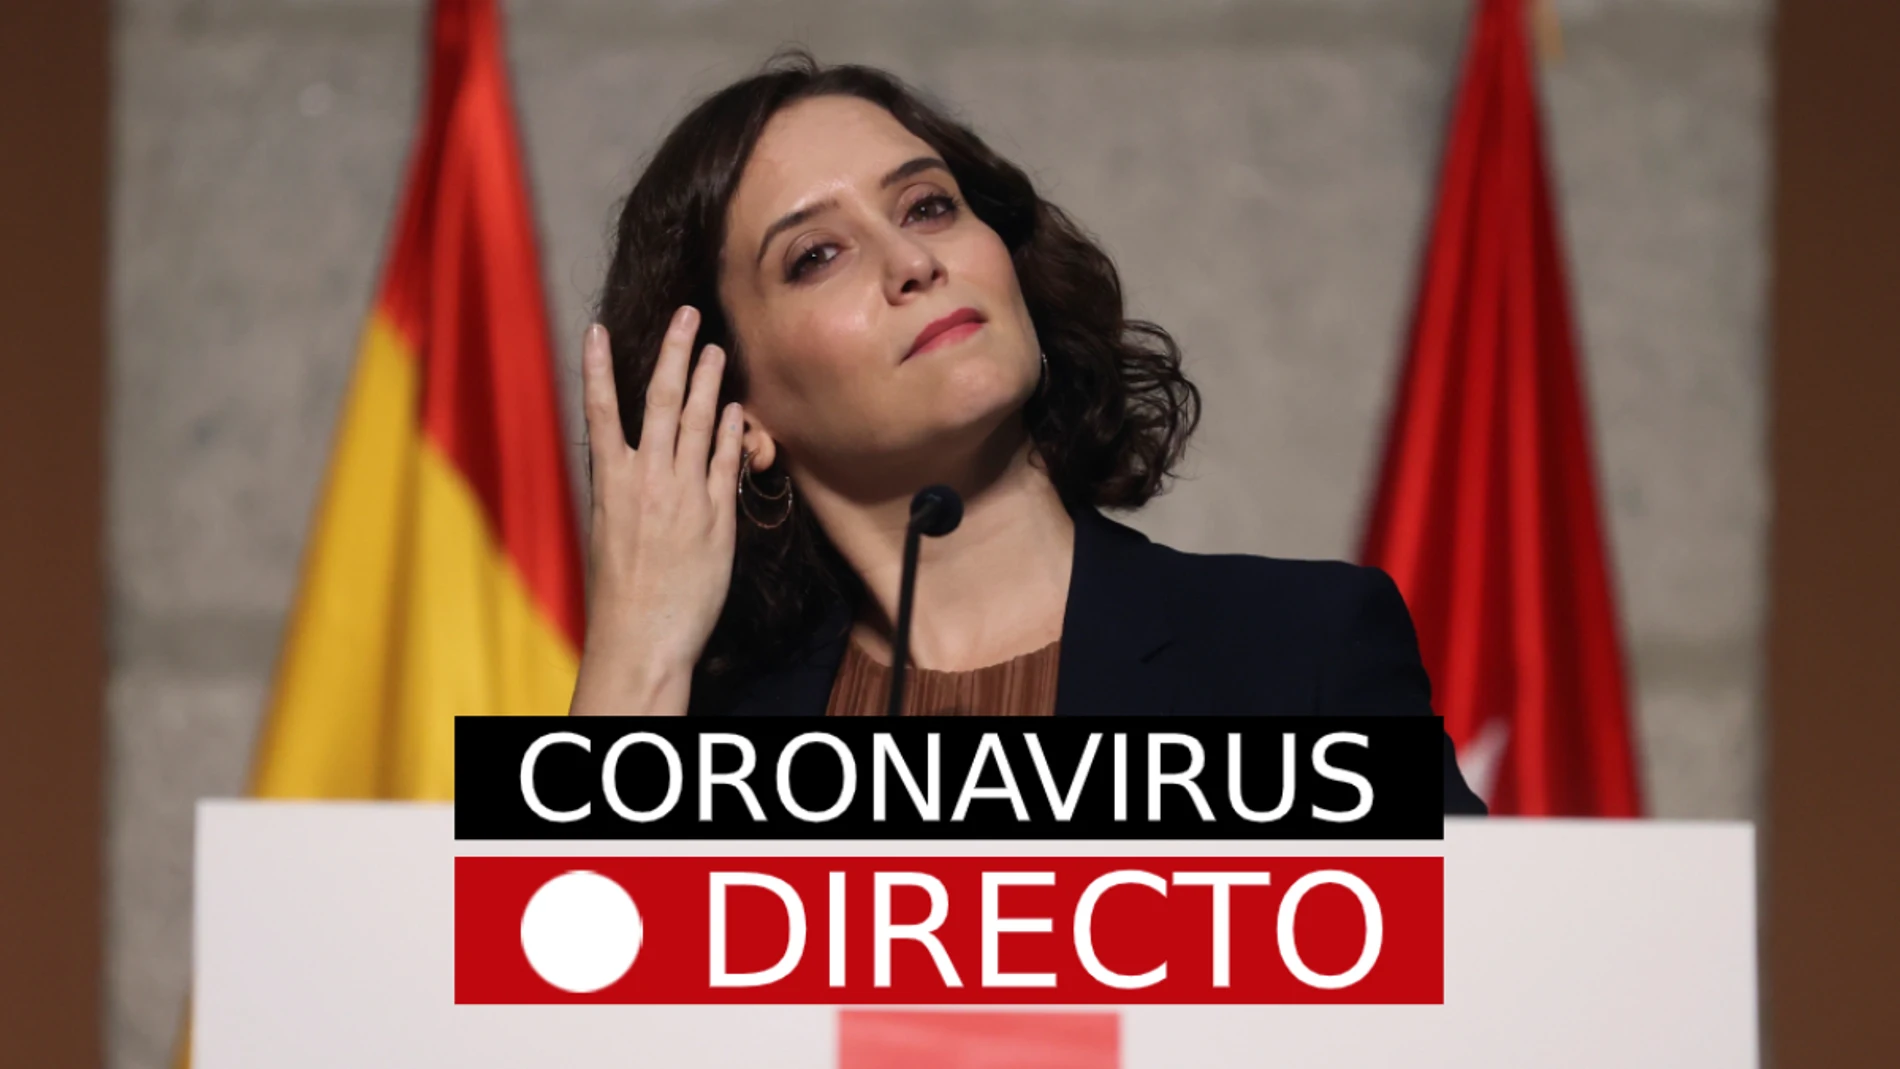 Coronavirus España: Madrid, 37 zonas restringidas y 8 municipios, noticias de última hora hoy del COVID-19, en directo